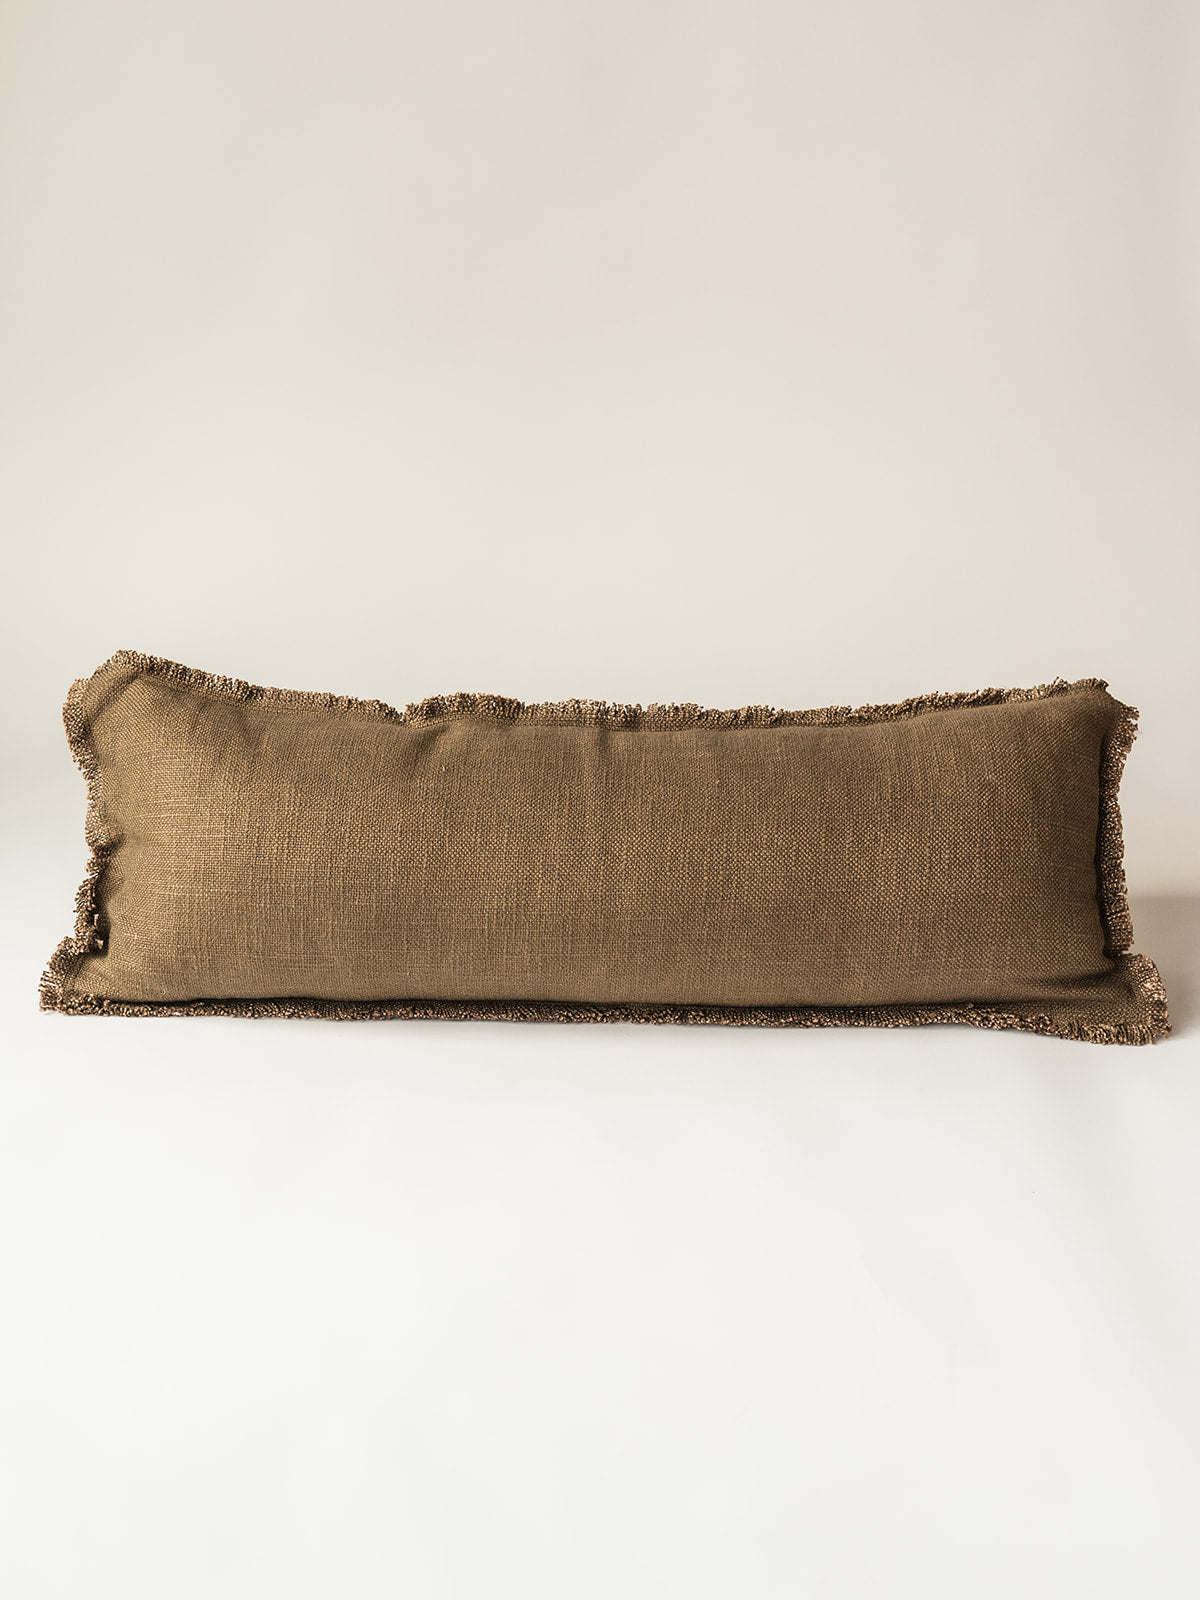 Luxe Linen 12x36 Lumbar Pillow